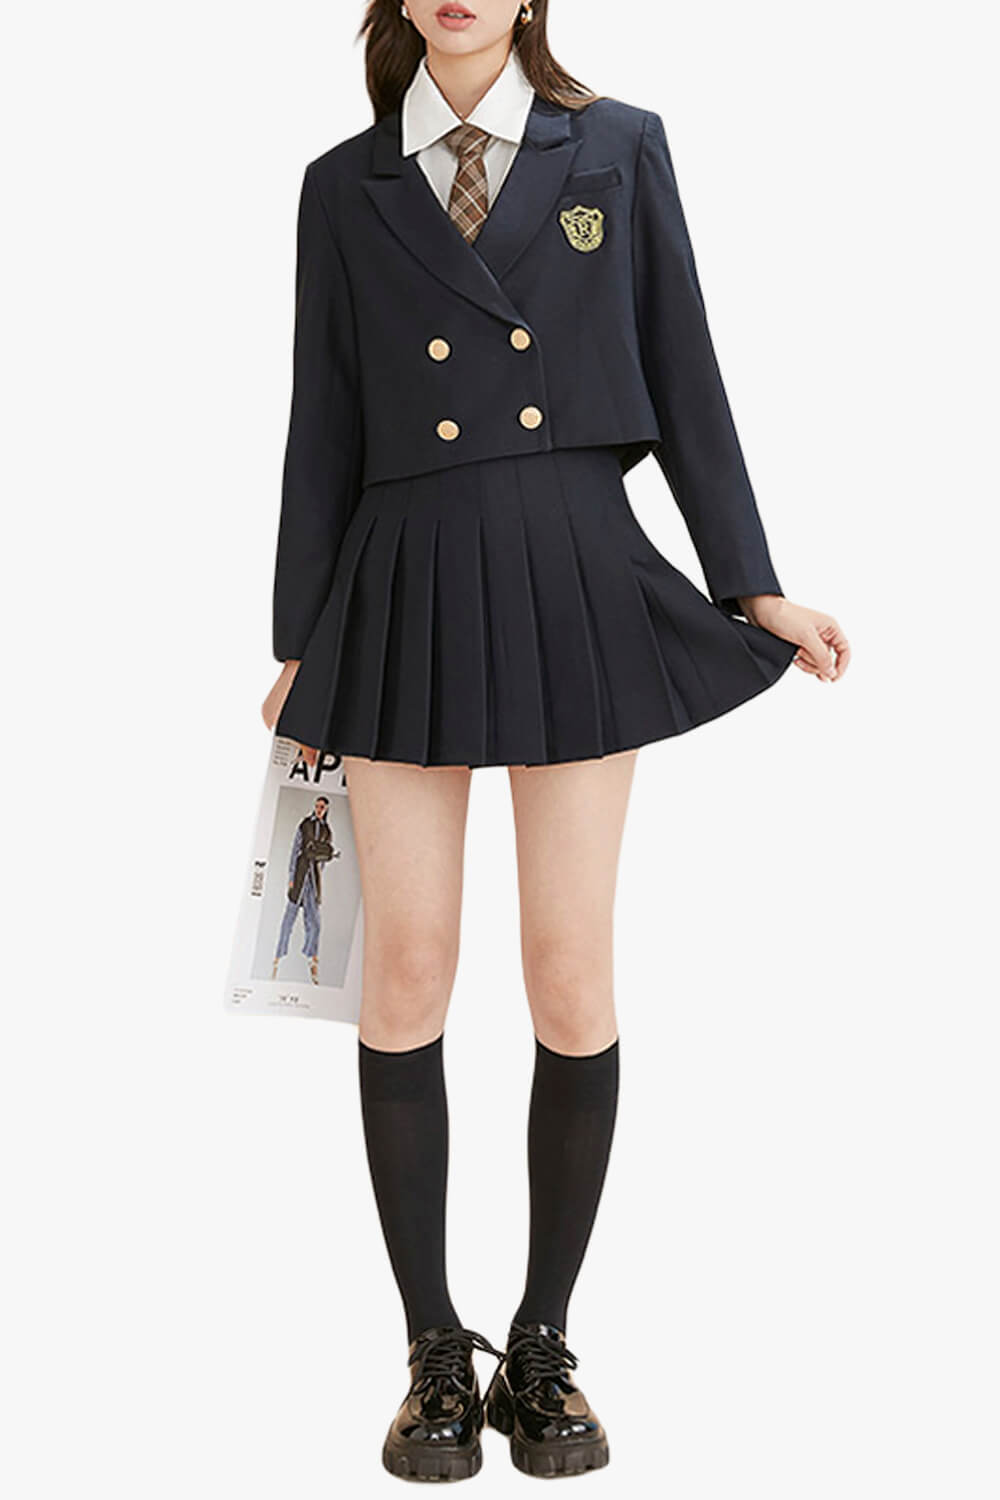 Schoolgirl Uniform Jacket Two Piece Skirt Set for Women